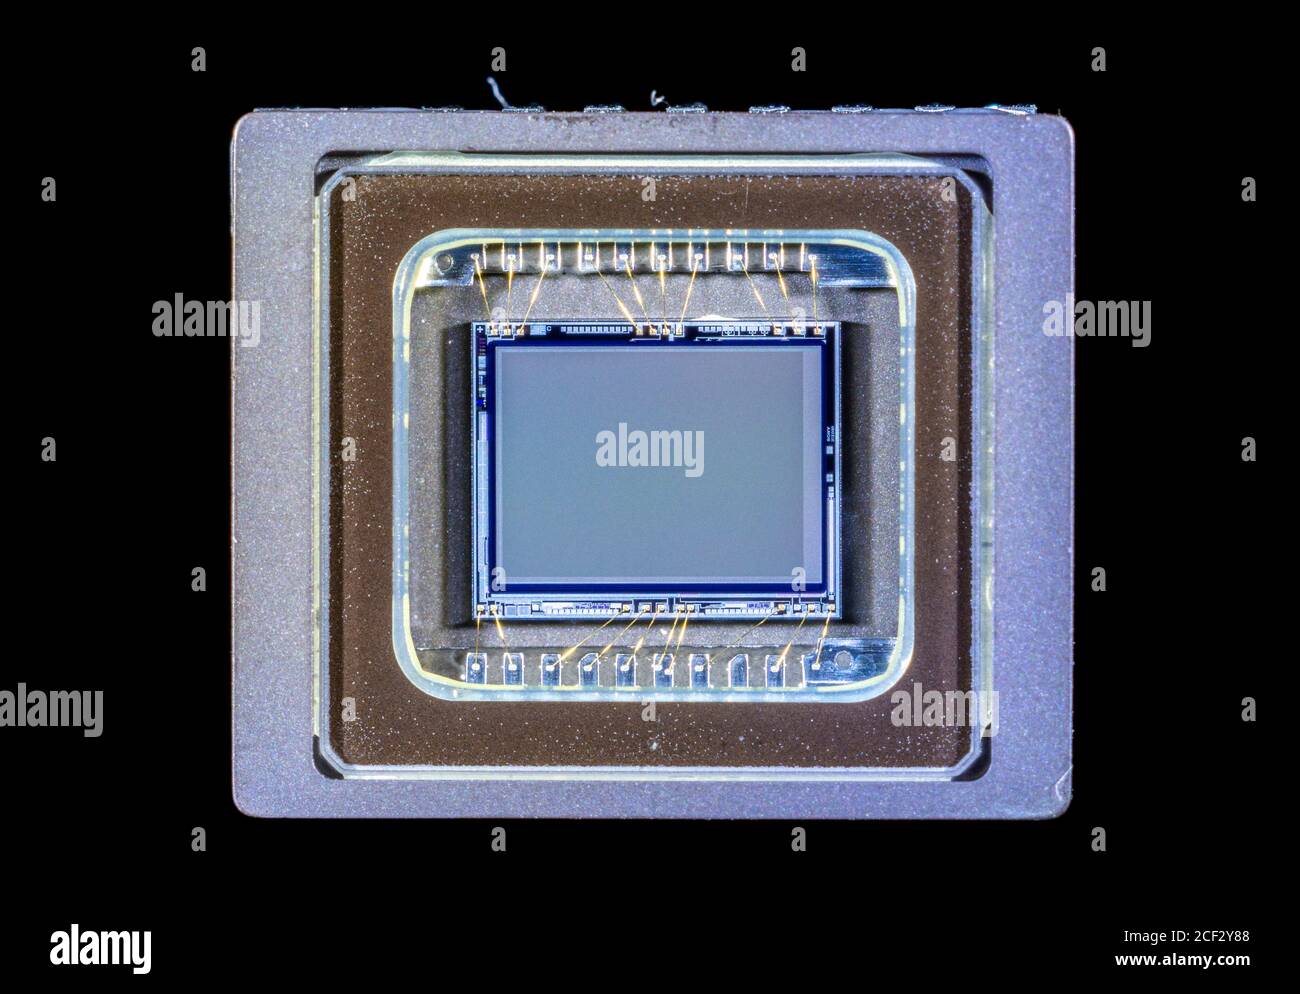 Primer plano de un chip sensor de imagen de estado sólido CCD ICX039 de Sony de una cámara de vídeo en color. 8 mm en diagonal. Foto de stock